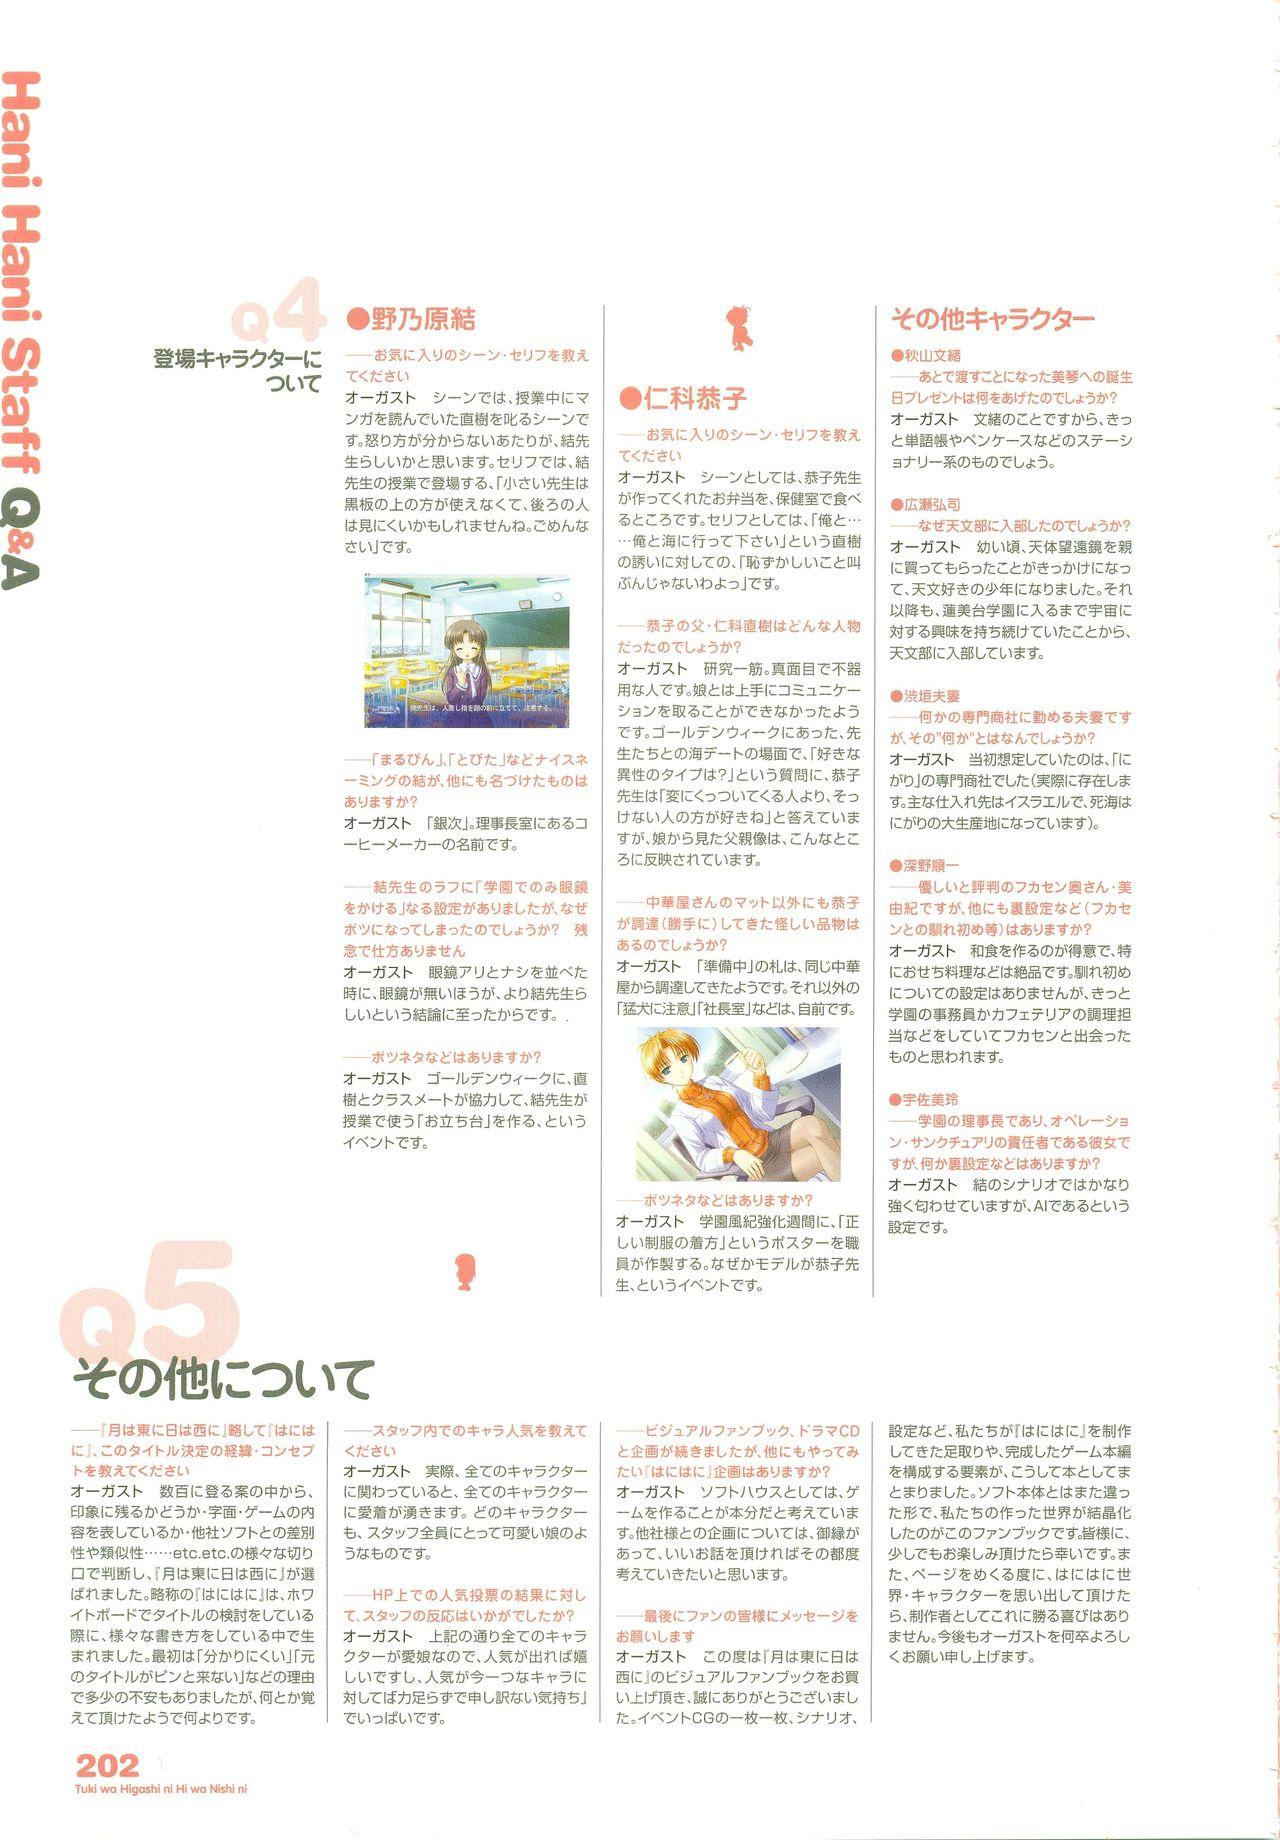 Tsuki wa Higashi ni Hi wa Nishi ni - Operation Sanctuary - Visual Fan Book Shokai Ban 243